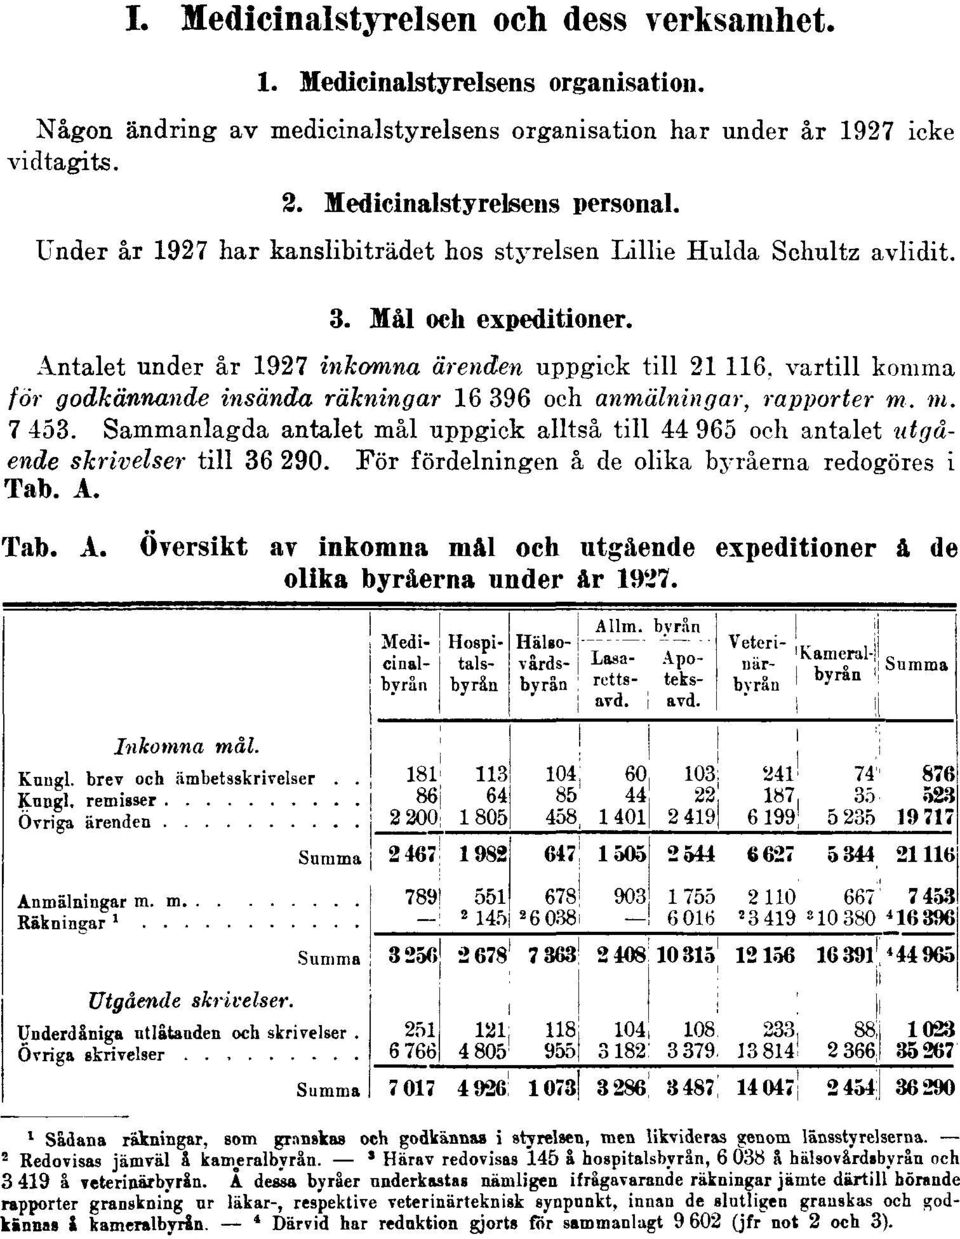 Antalet under år 1927 inkomna ärenden uppgick till 21 116, vartill komma för godkännande insända räkningar 16 396 och anmälningar, rapporter m. ni. 7 453.